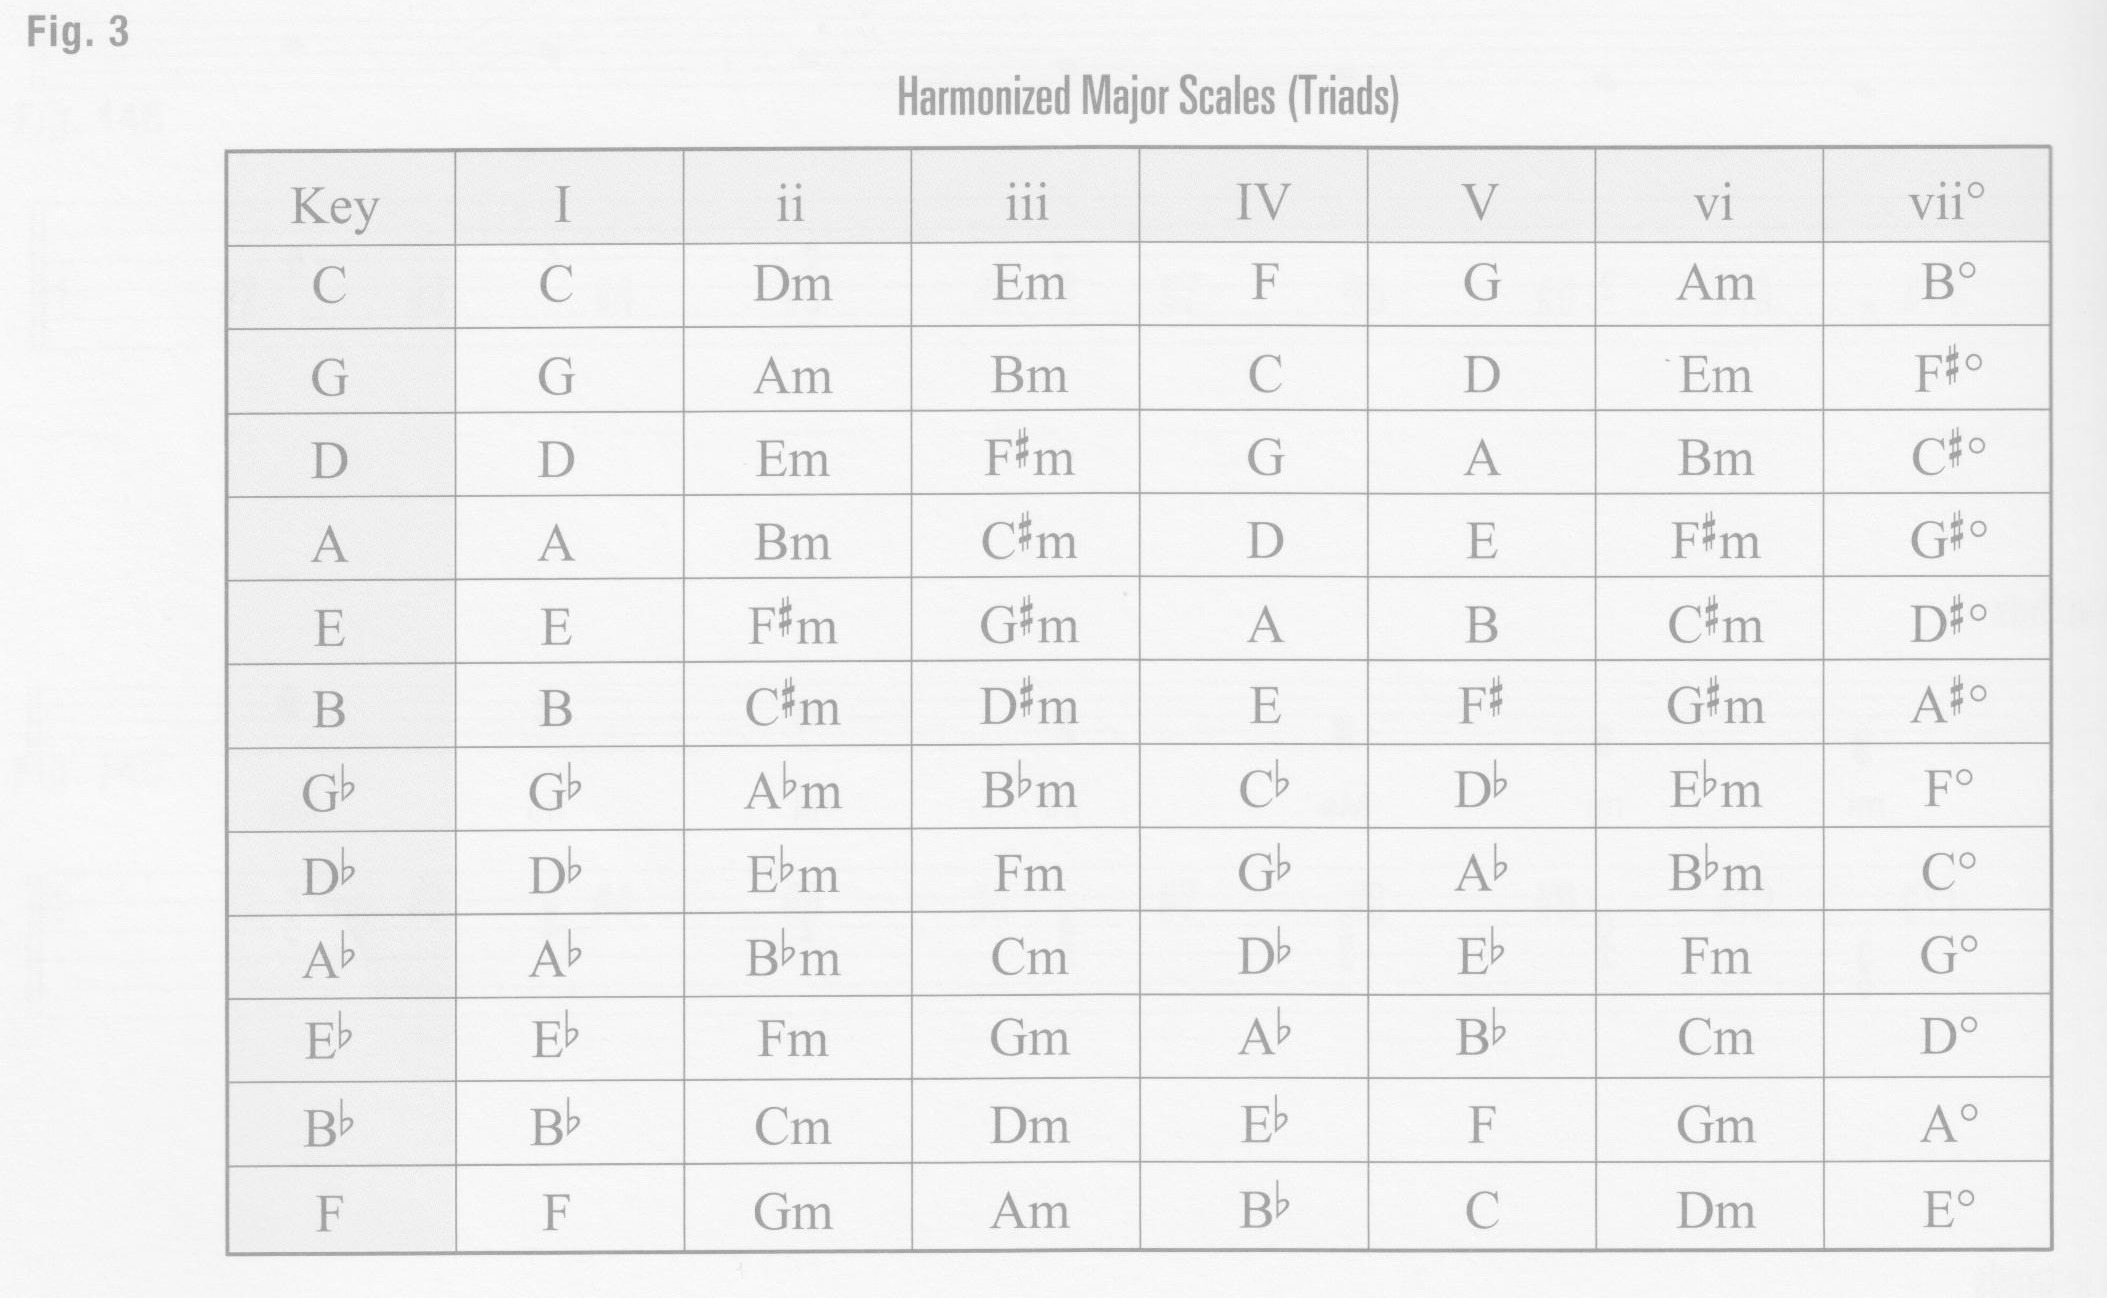 p36-figure-3-harmonized-major-scales